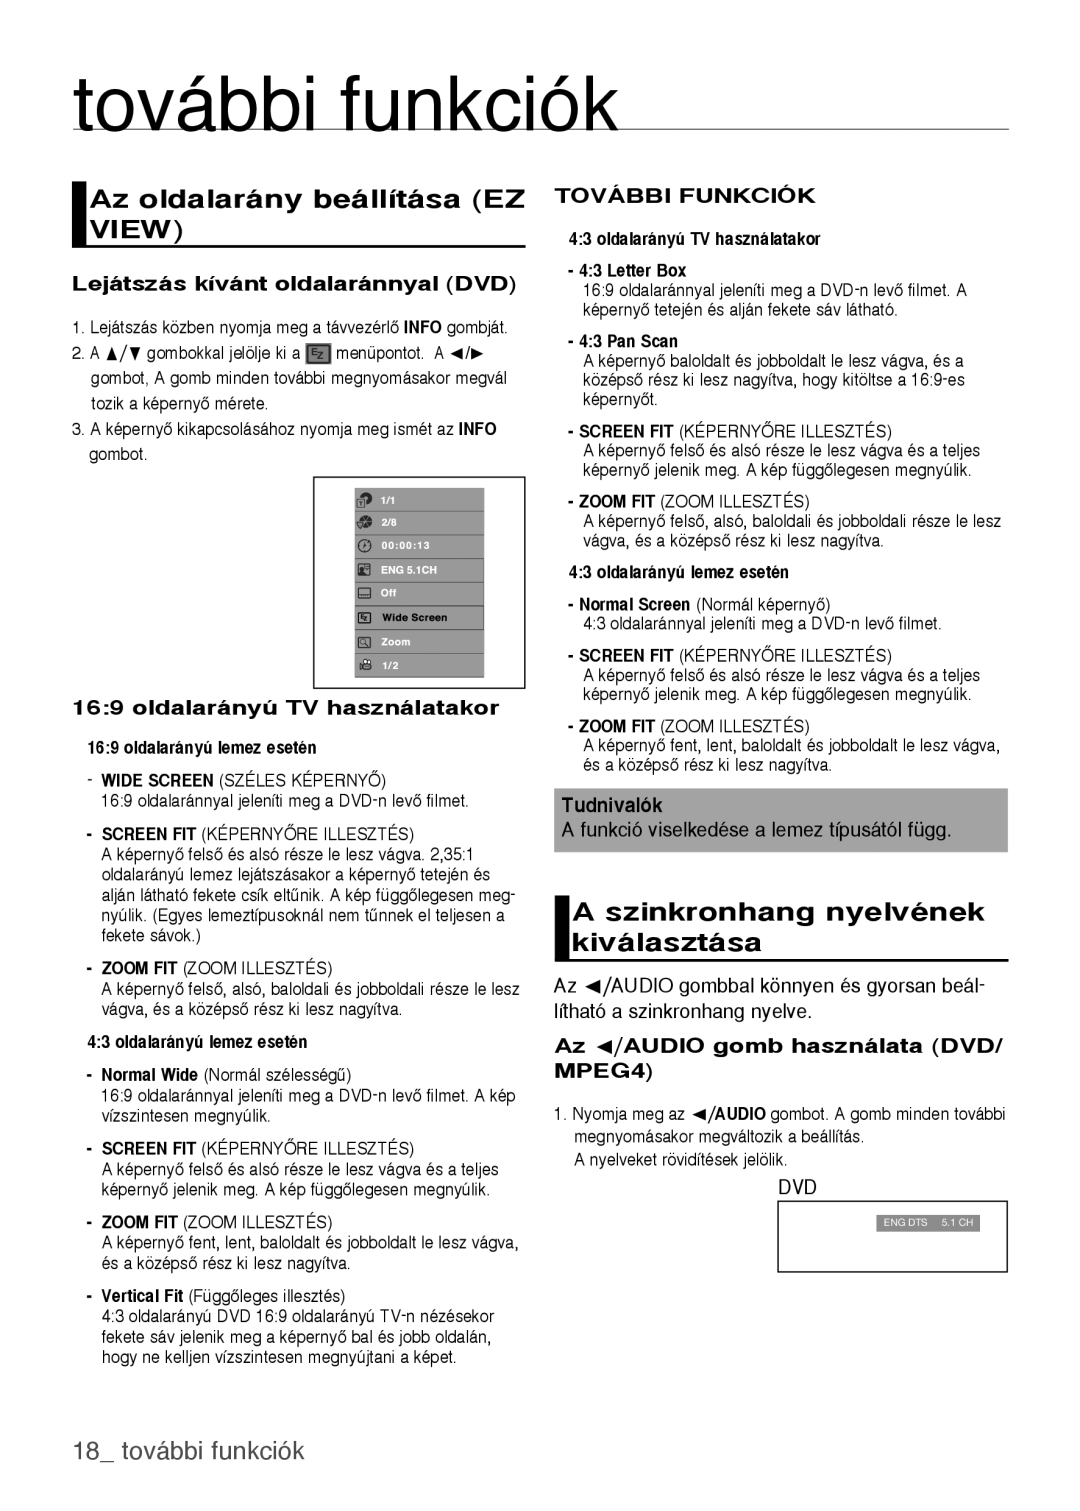 Samsung DVD-H1080/XET manual további funkciók, Az oldalarány beállítása EZ VIEW, A szinkronhang nyelvének kiválasztása 